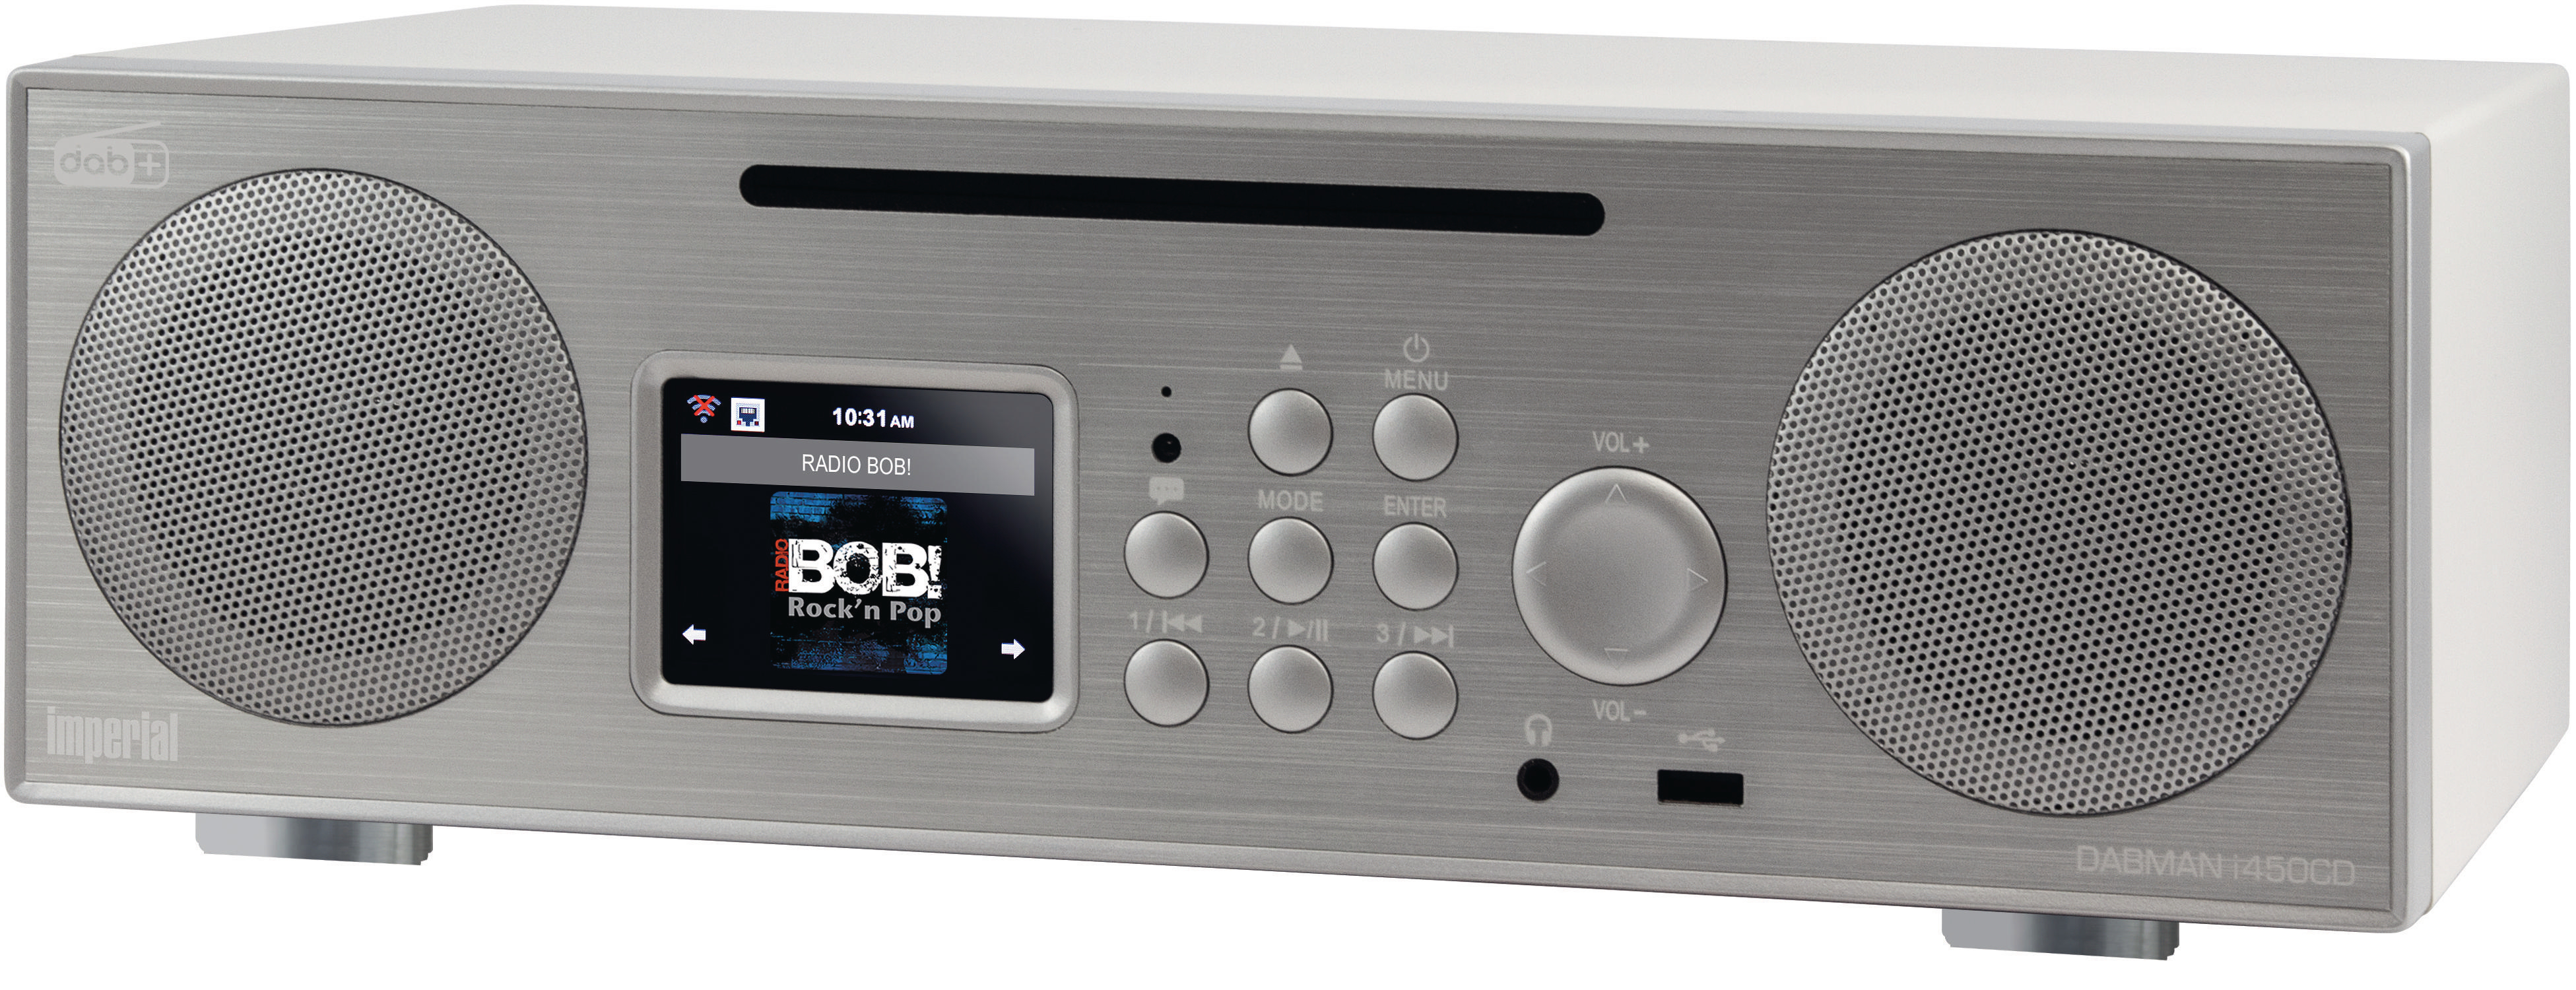 IMPERIAL DABMAN i450 CD DAB+ AM, silber/weiß Internet DAB+, FM, Radio, Radio, DAB, Bluetooth